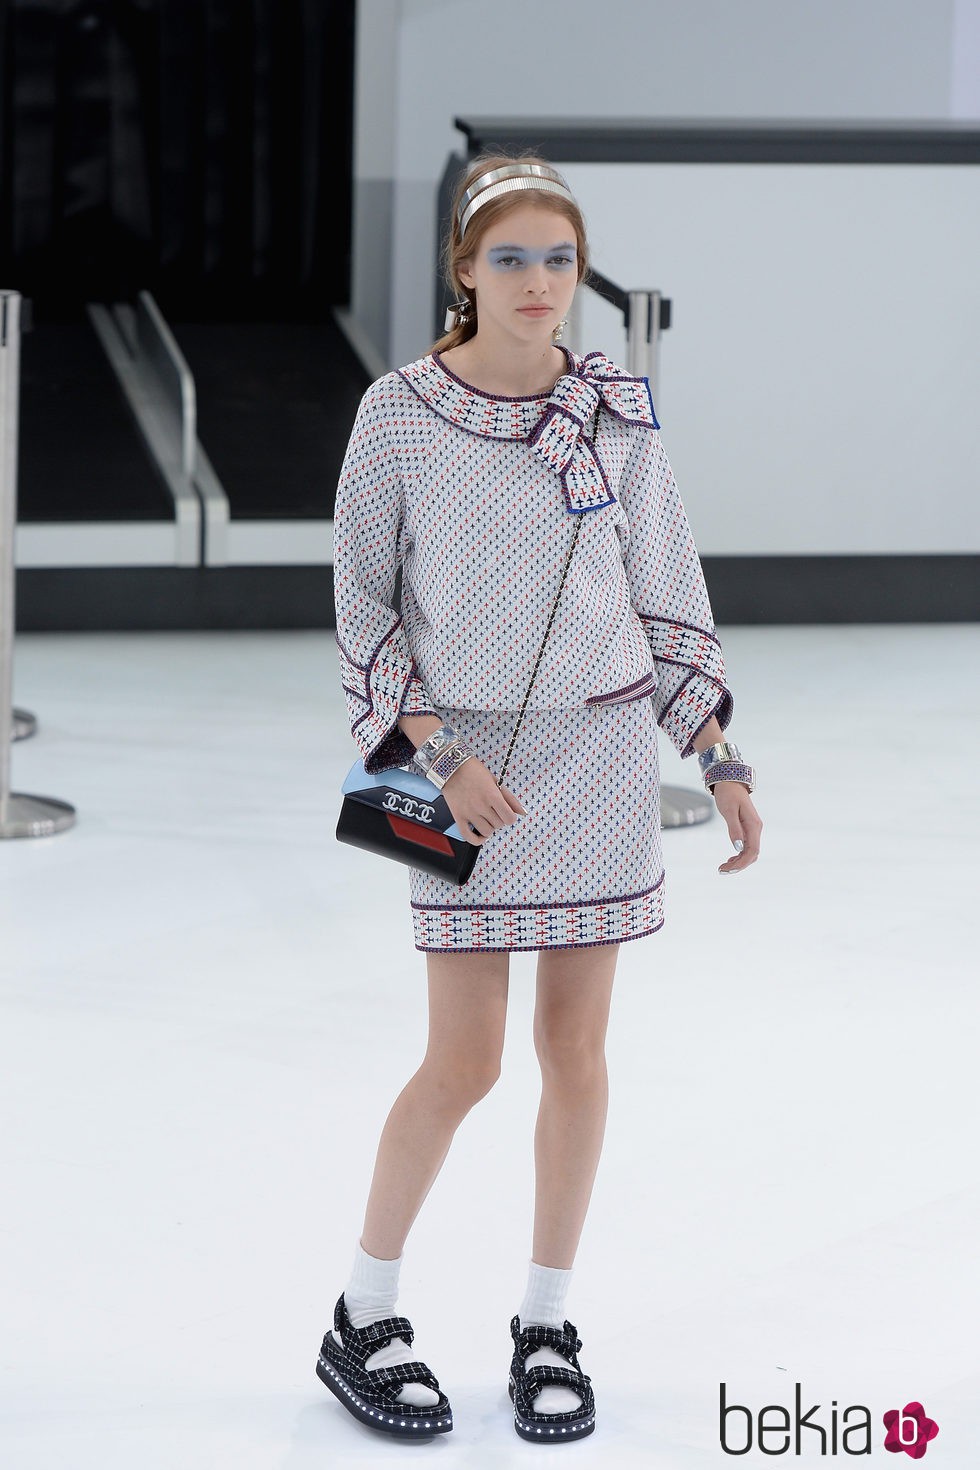 Camisa y falda con estampado de aviones de la nueva colección de Chanel primavera/verano 2016 en París Fashion Week